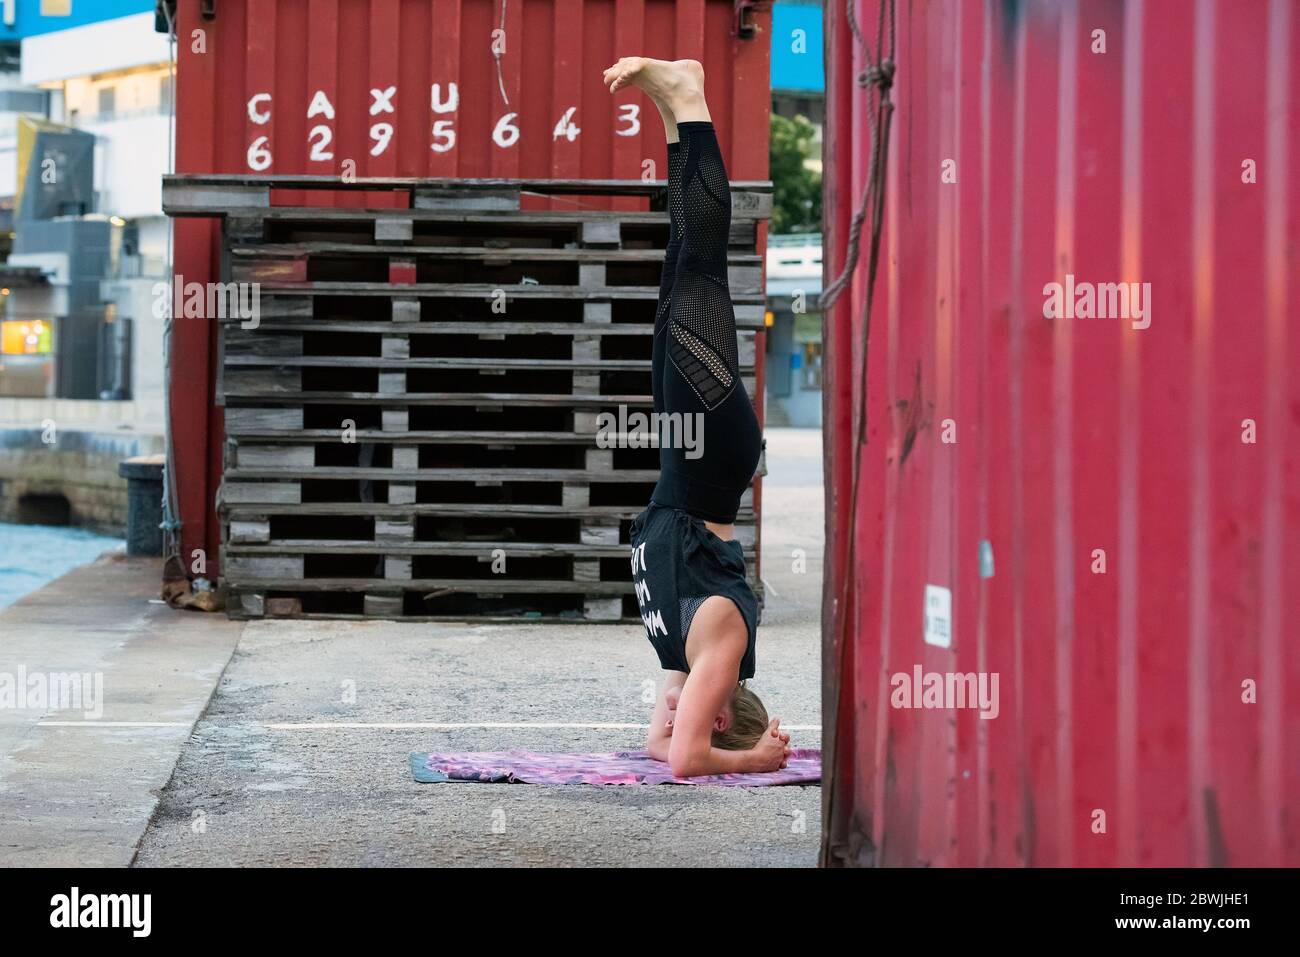 Persone che praticano lo Yoga all'aperto durante il COVID-19, Coronavirus Pandemic, Hong Kong, Cina. Foto Stock